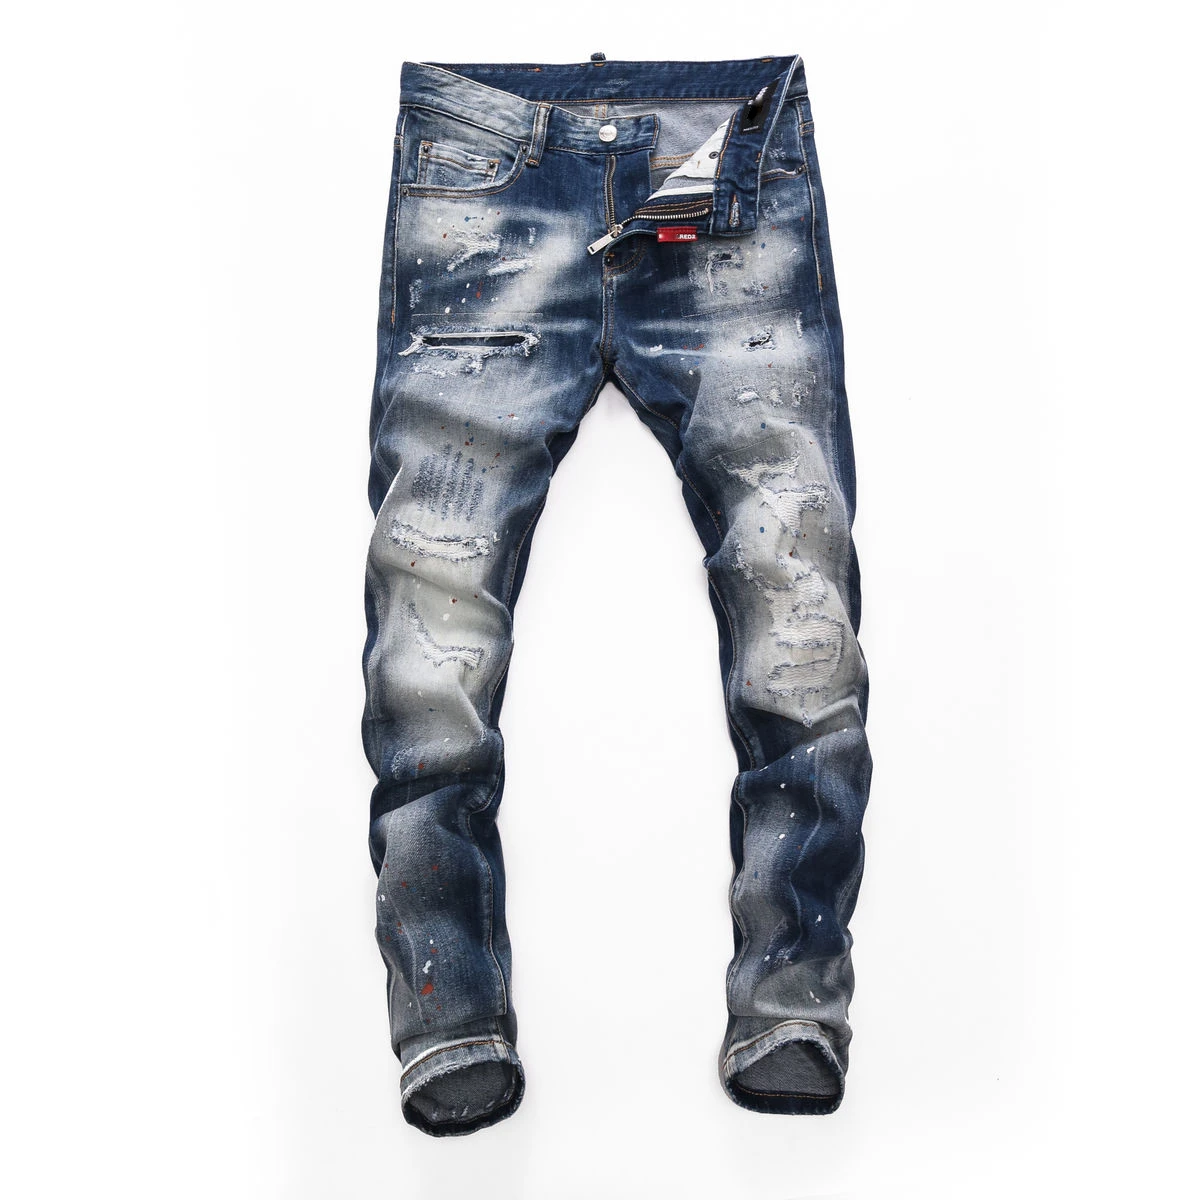 

Джинсы для мужчин, европейский бренд, Стиль Для мужчин D2 джинсы италия брюки Для мужчин Зауженные джинсы джинсовые штаны рваные синие мотоц...